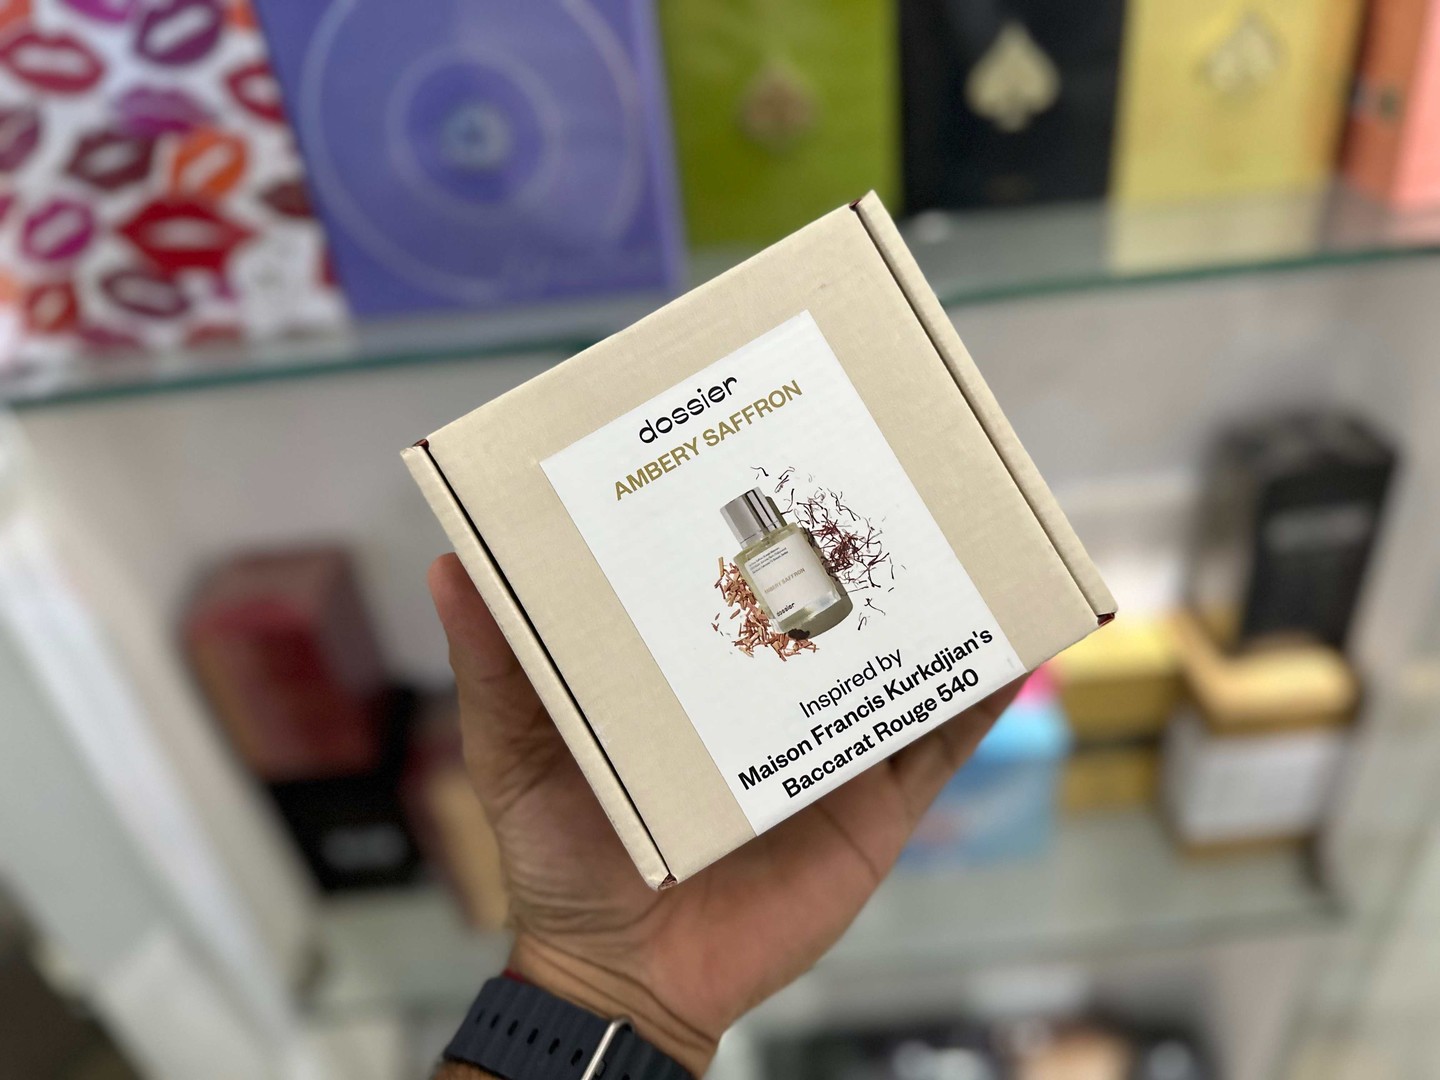 salud y belleza - Vendo Perfumes Dossier Ambery Saffron inspirado Bacarat Rouge Nuevo $ 4,700 NEG